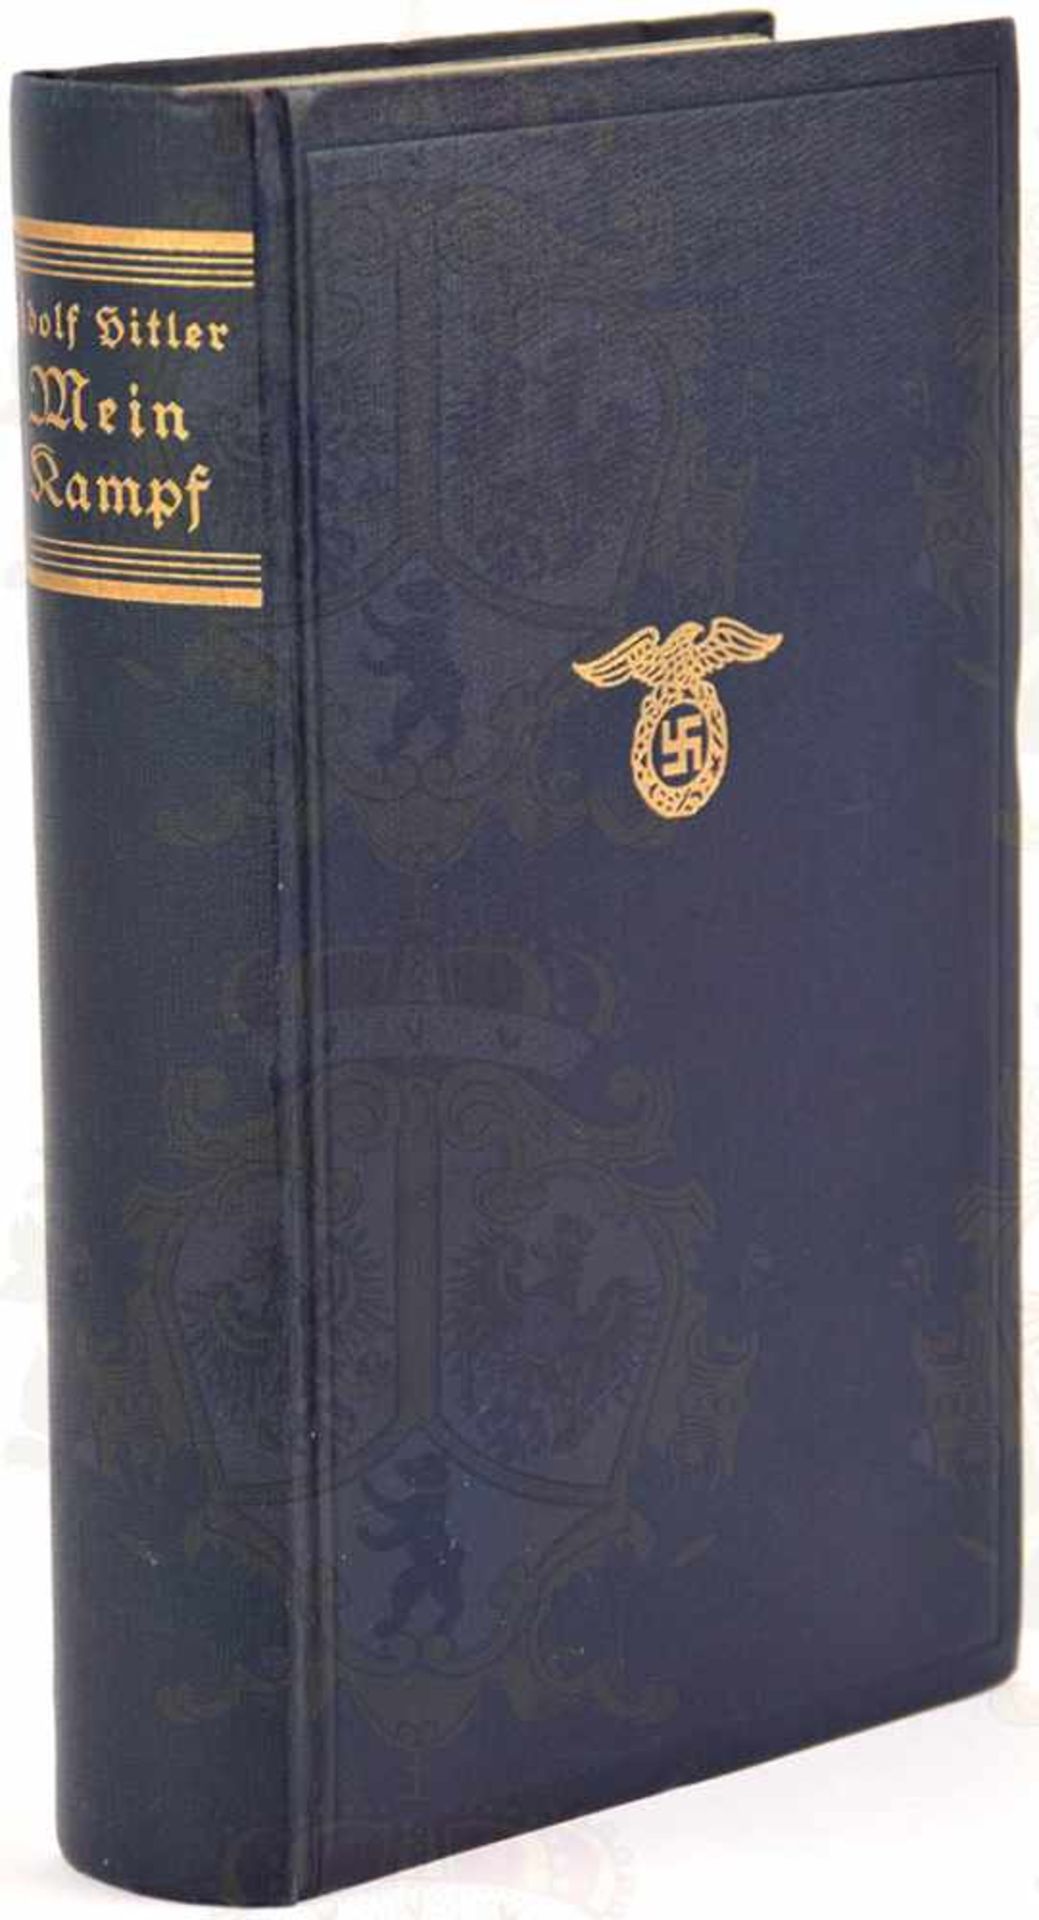 MEIN KAMPF, Adolf Hitler, Volksausgabe, Eher-Verlag, München 1933, 781 S., 1 Porträtbild,